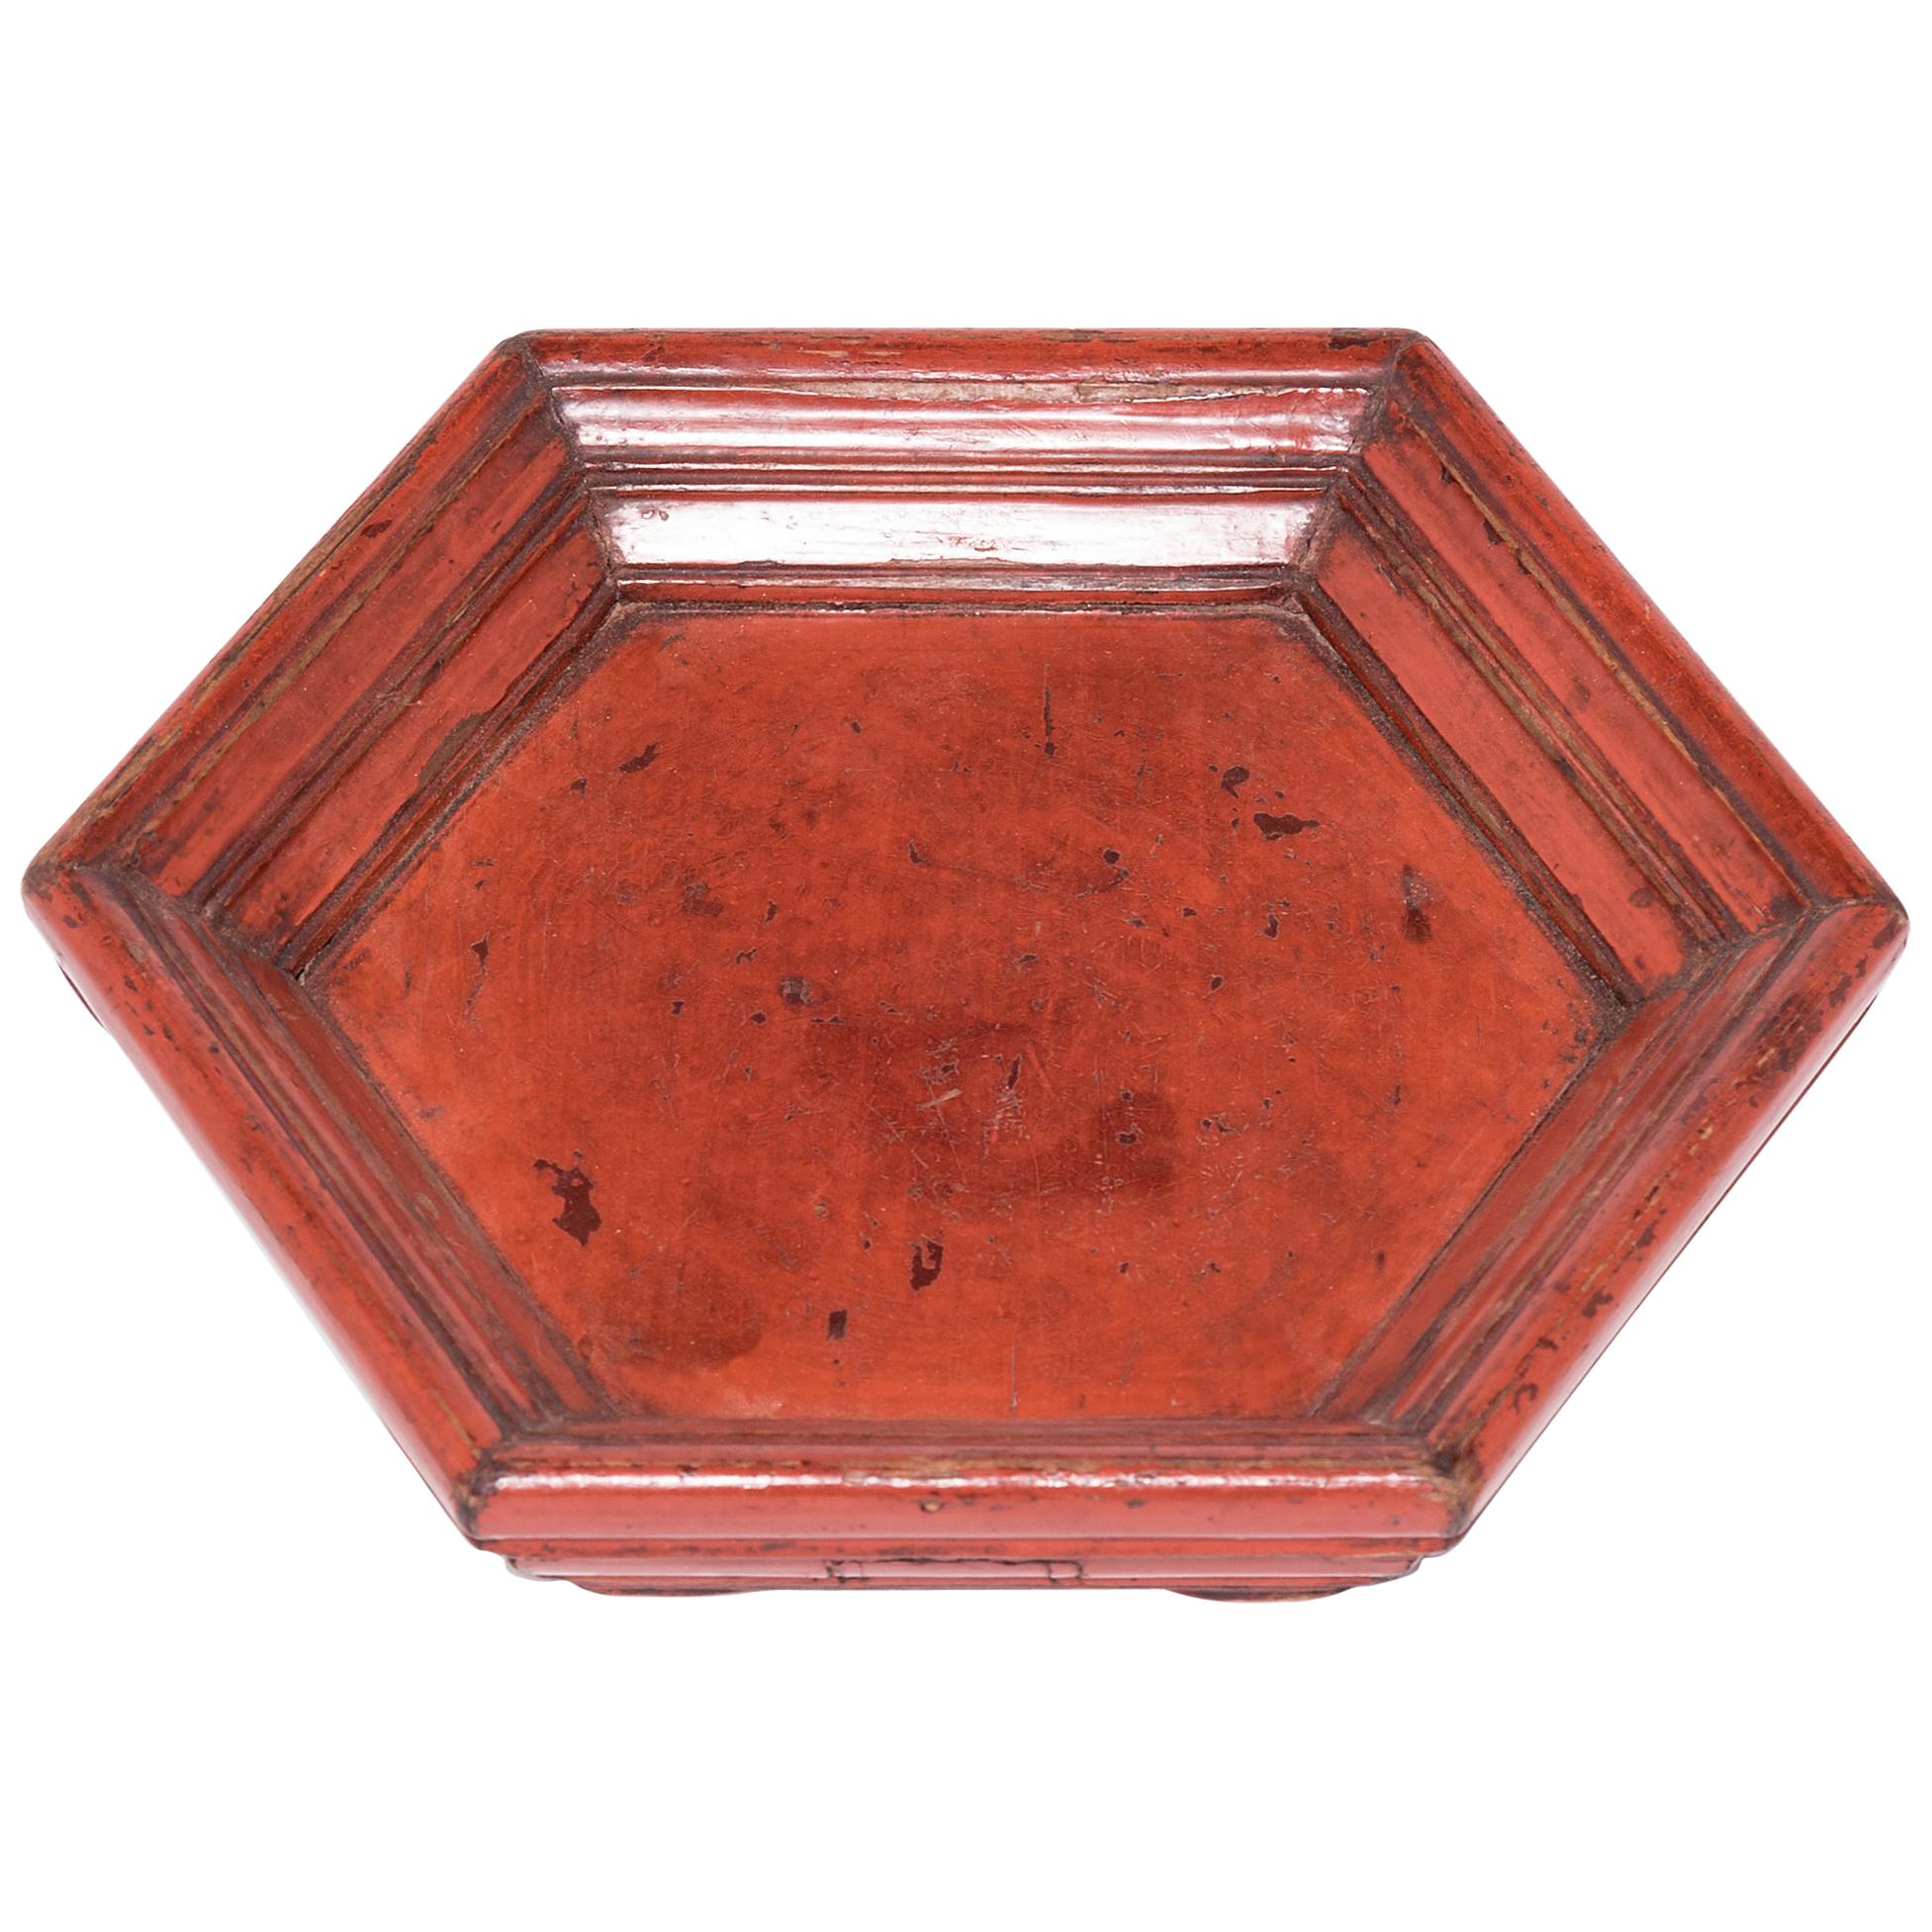 Chinese Cinnabar Red Honeycomb Tray, c. 1900